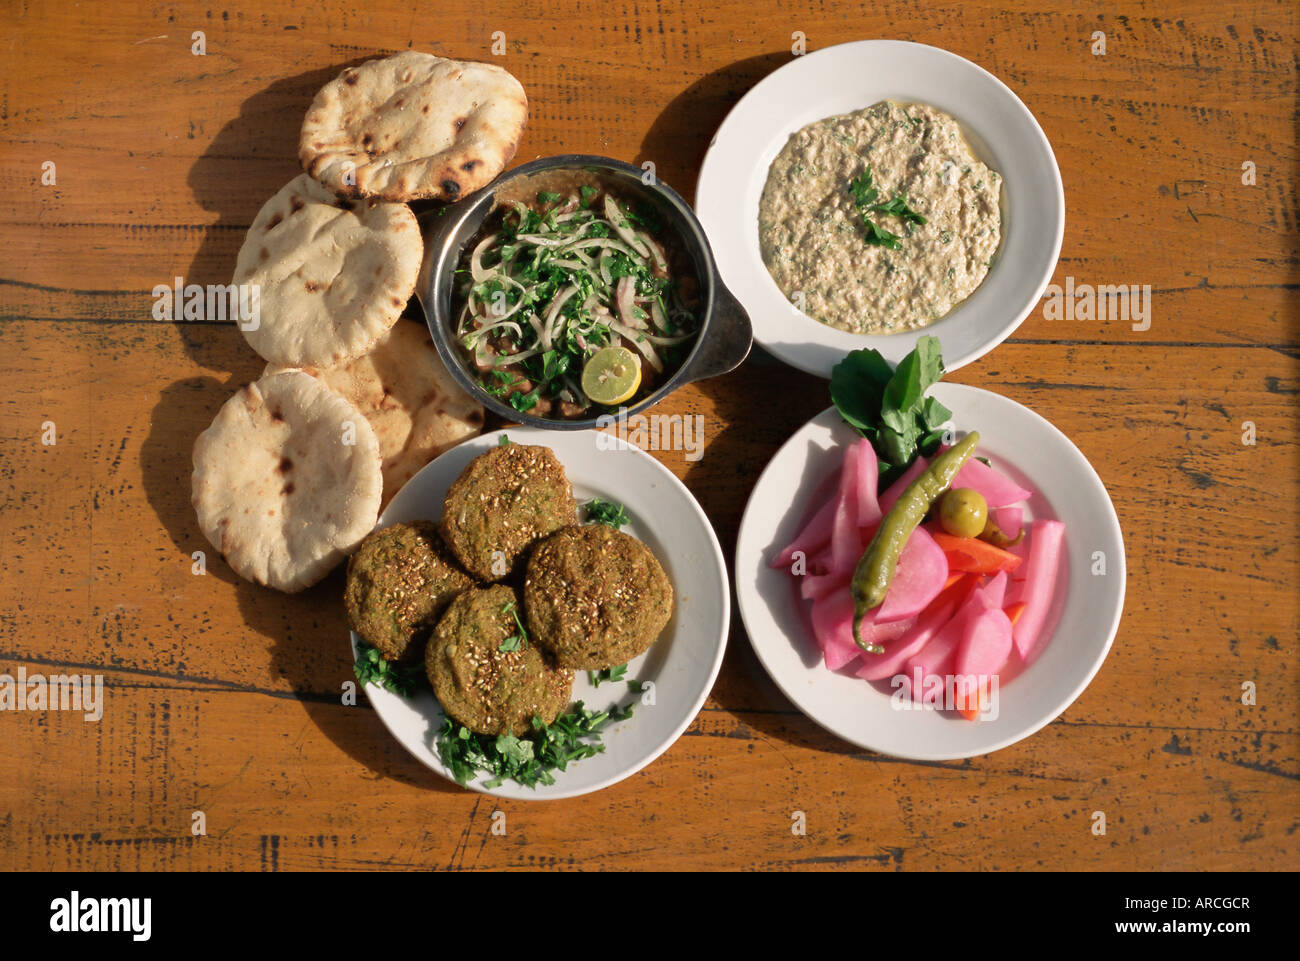 Assiettes d'aliments traditionnels, falafel et shawarma, babaghanoush, avec des pains plats, Le Caire, Egypte, Afrique du Nord, Afrique Banque D'Images